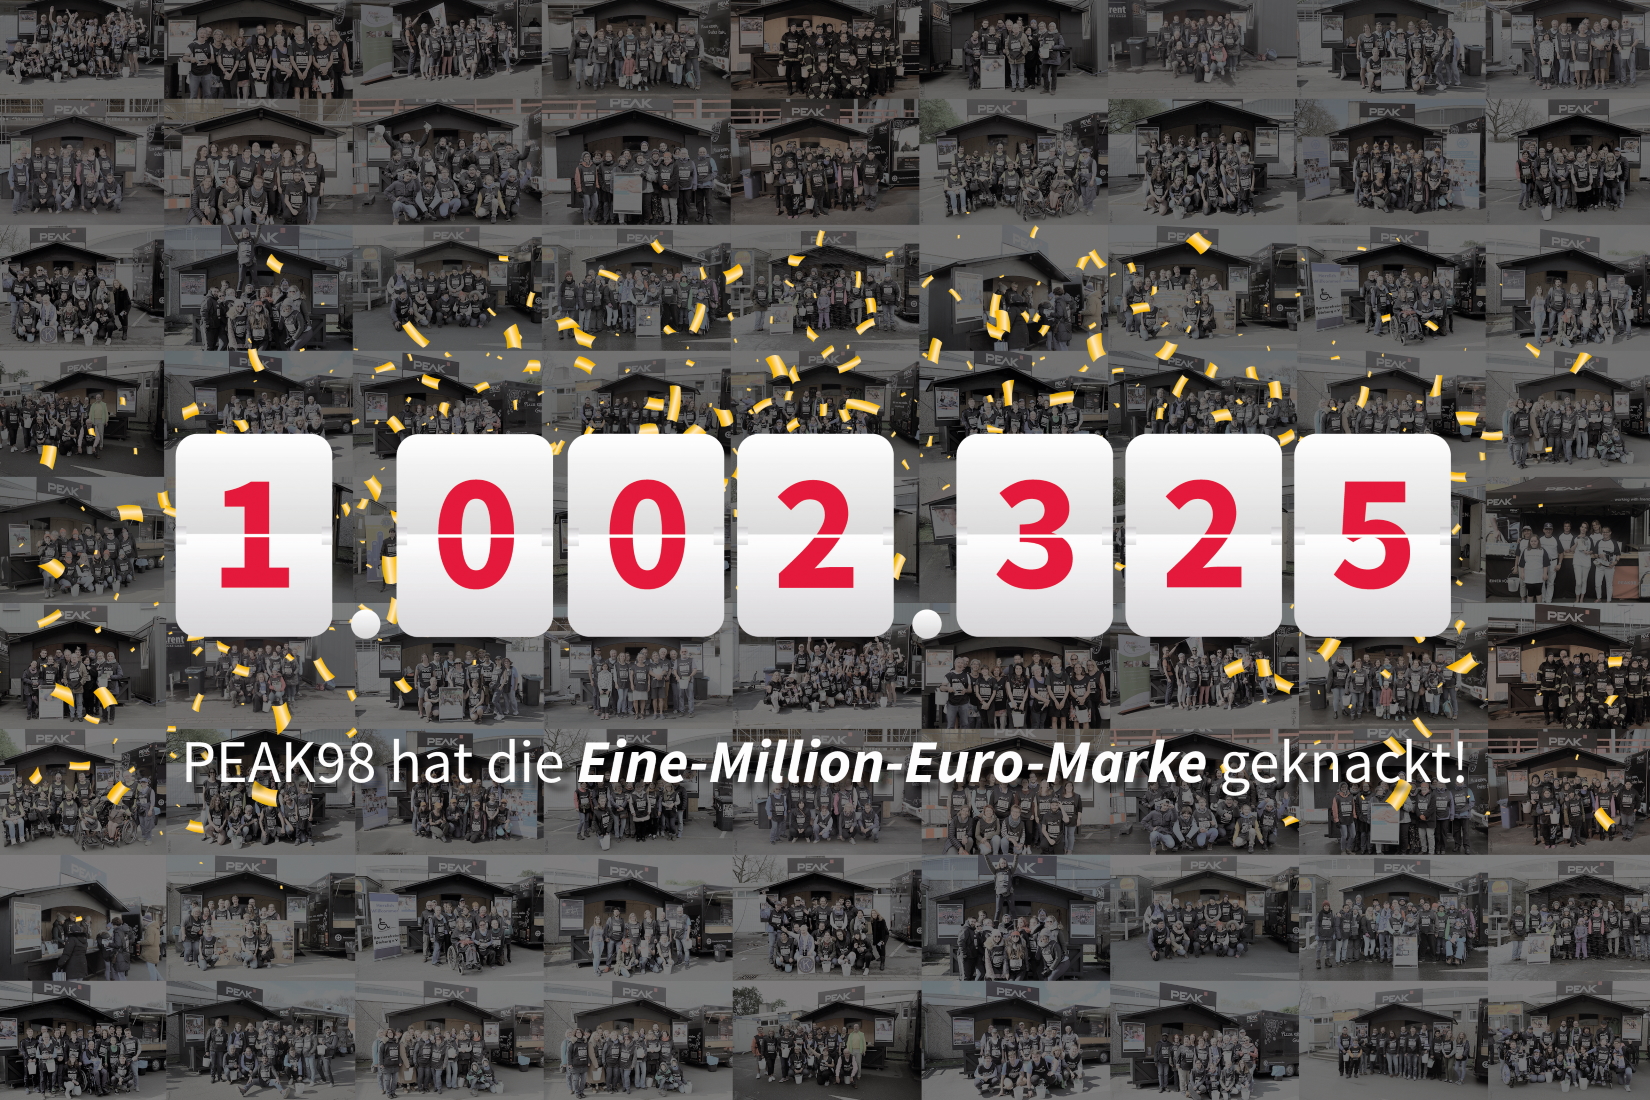 PEAK-Spendenaktion knackt die Eine-Million-Euro-Marke